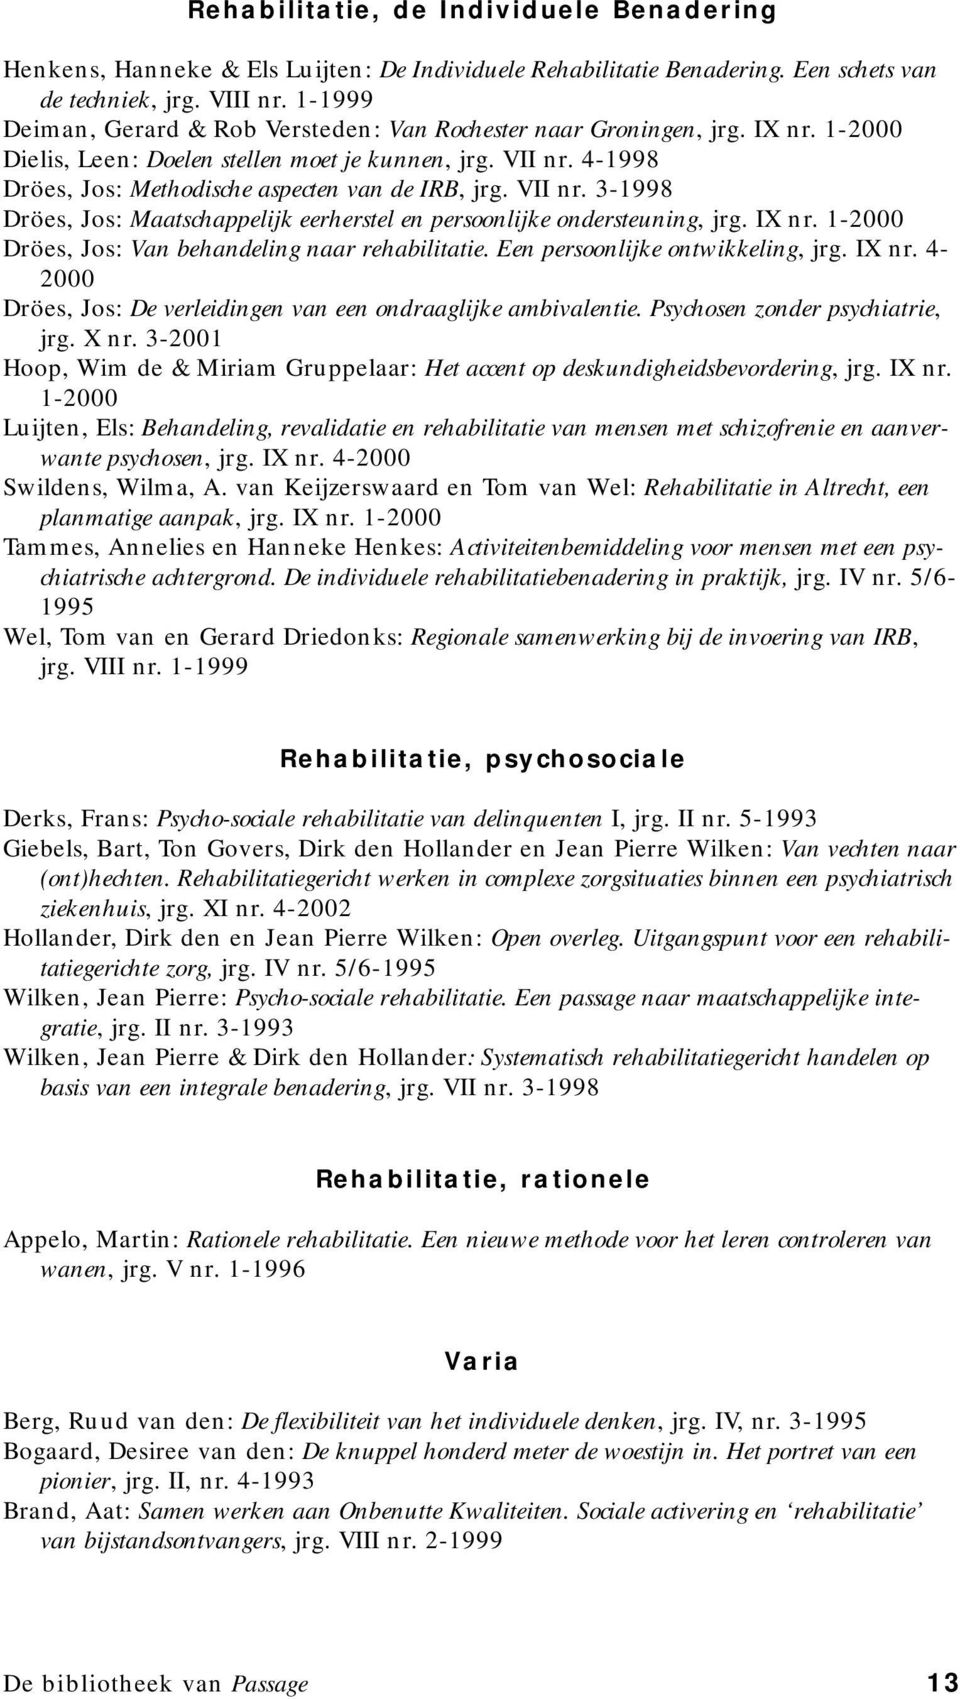 4-1998 Dröes, Jos: Methodische aspecten van de IRB, jrg. VII nr. 3-1998 Dröes, Jos: Maatschappelijk eerherstel en persoonlijke ondersteuning, jrg. IX nr.